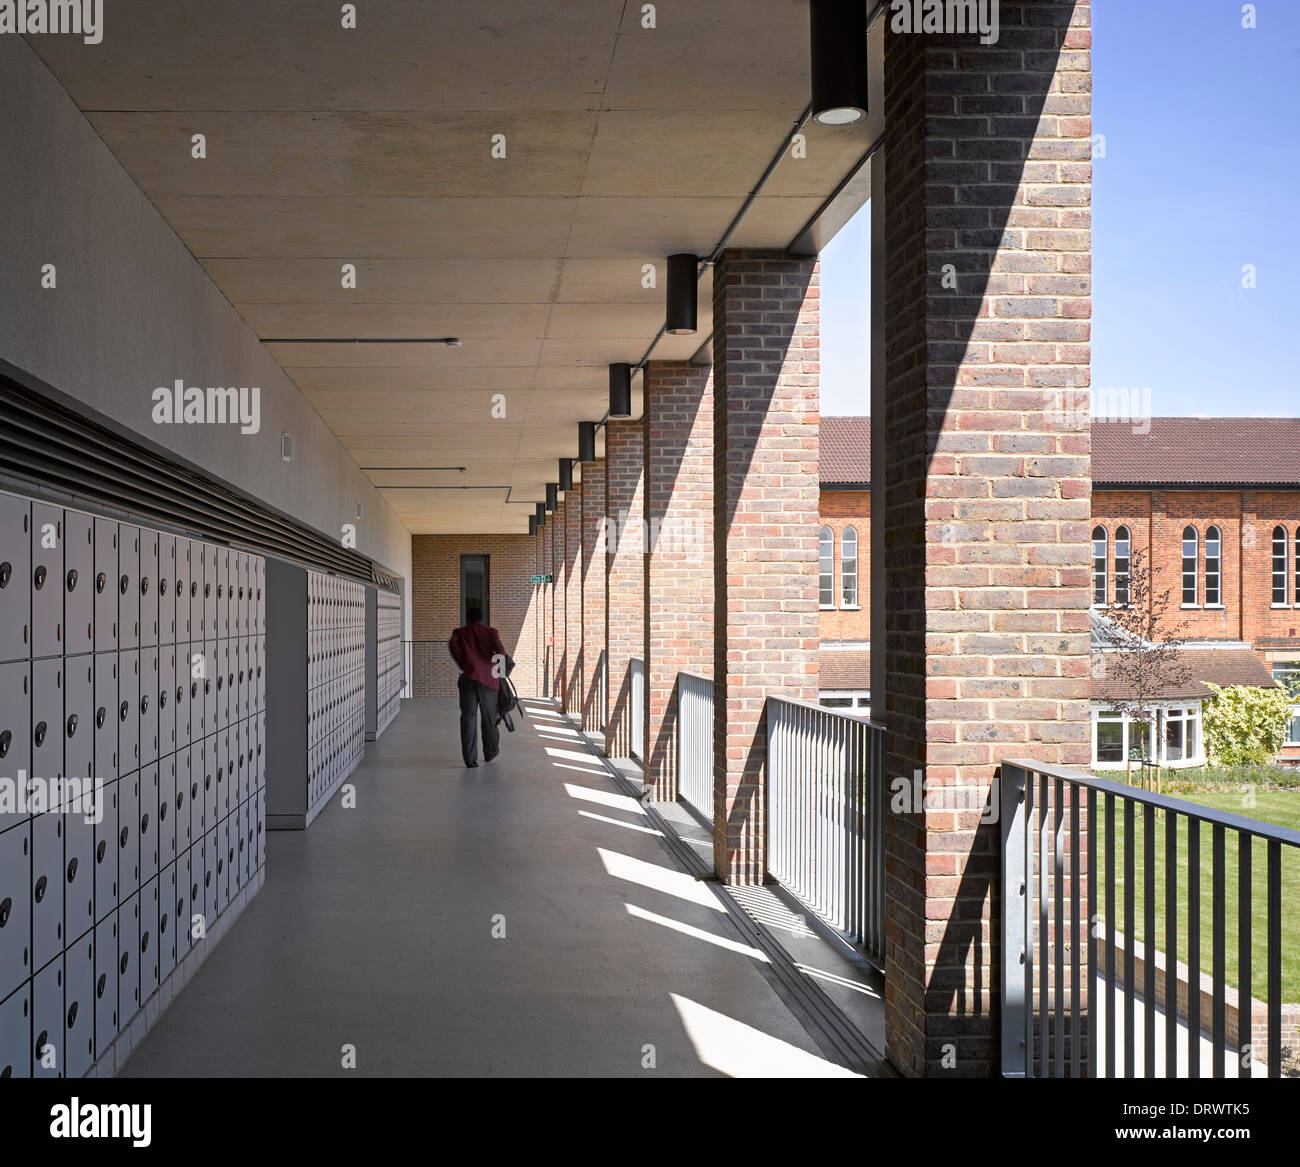 L'Apôtre saint Thomas College, Londres, Royaume-Uni. Architecte : Alliés et Morrison, 2013. Corridor sur niveau supérieur. Banque D'Images